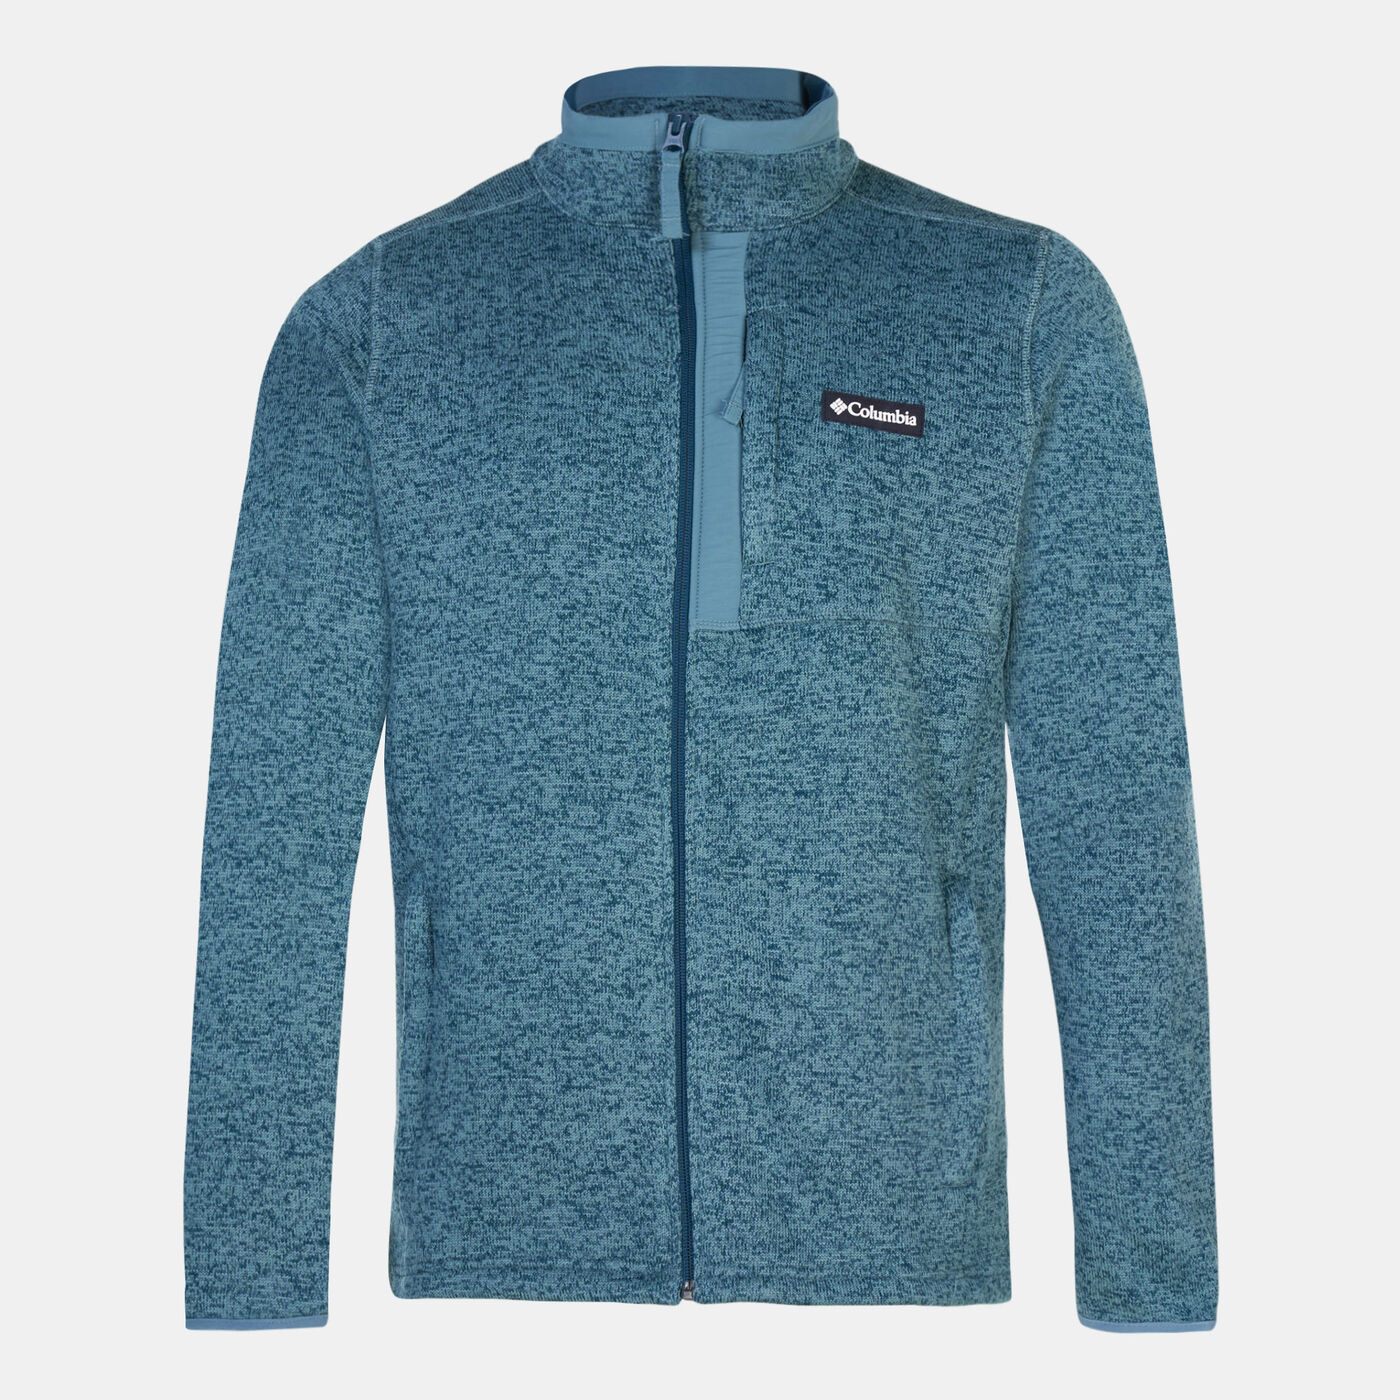 Men's Sweater Weather™ Full Zip Jacket